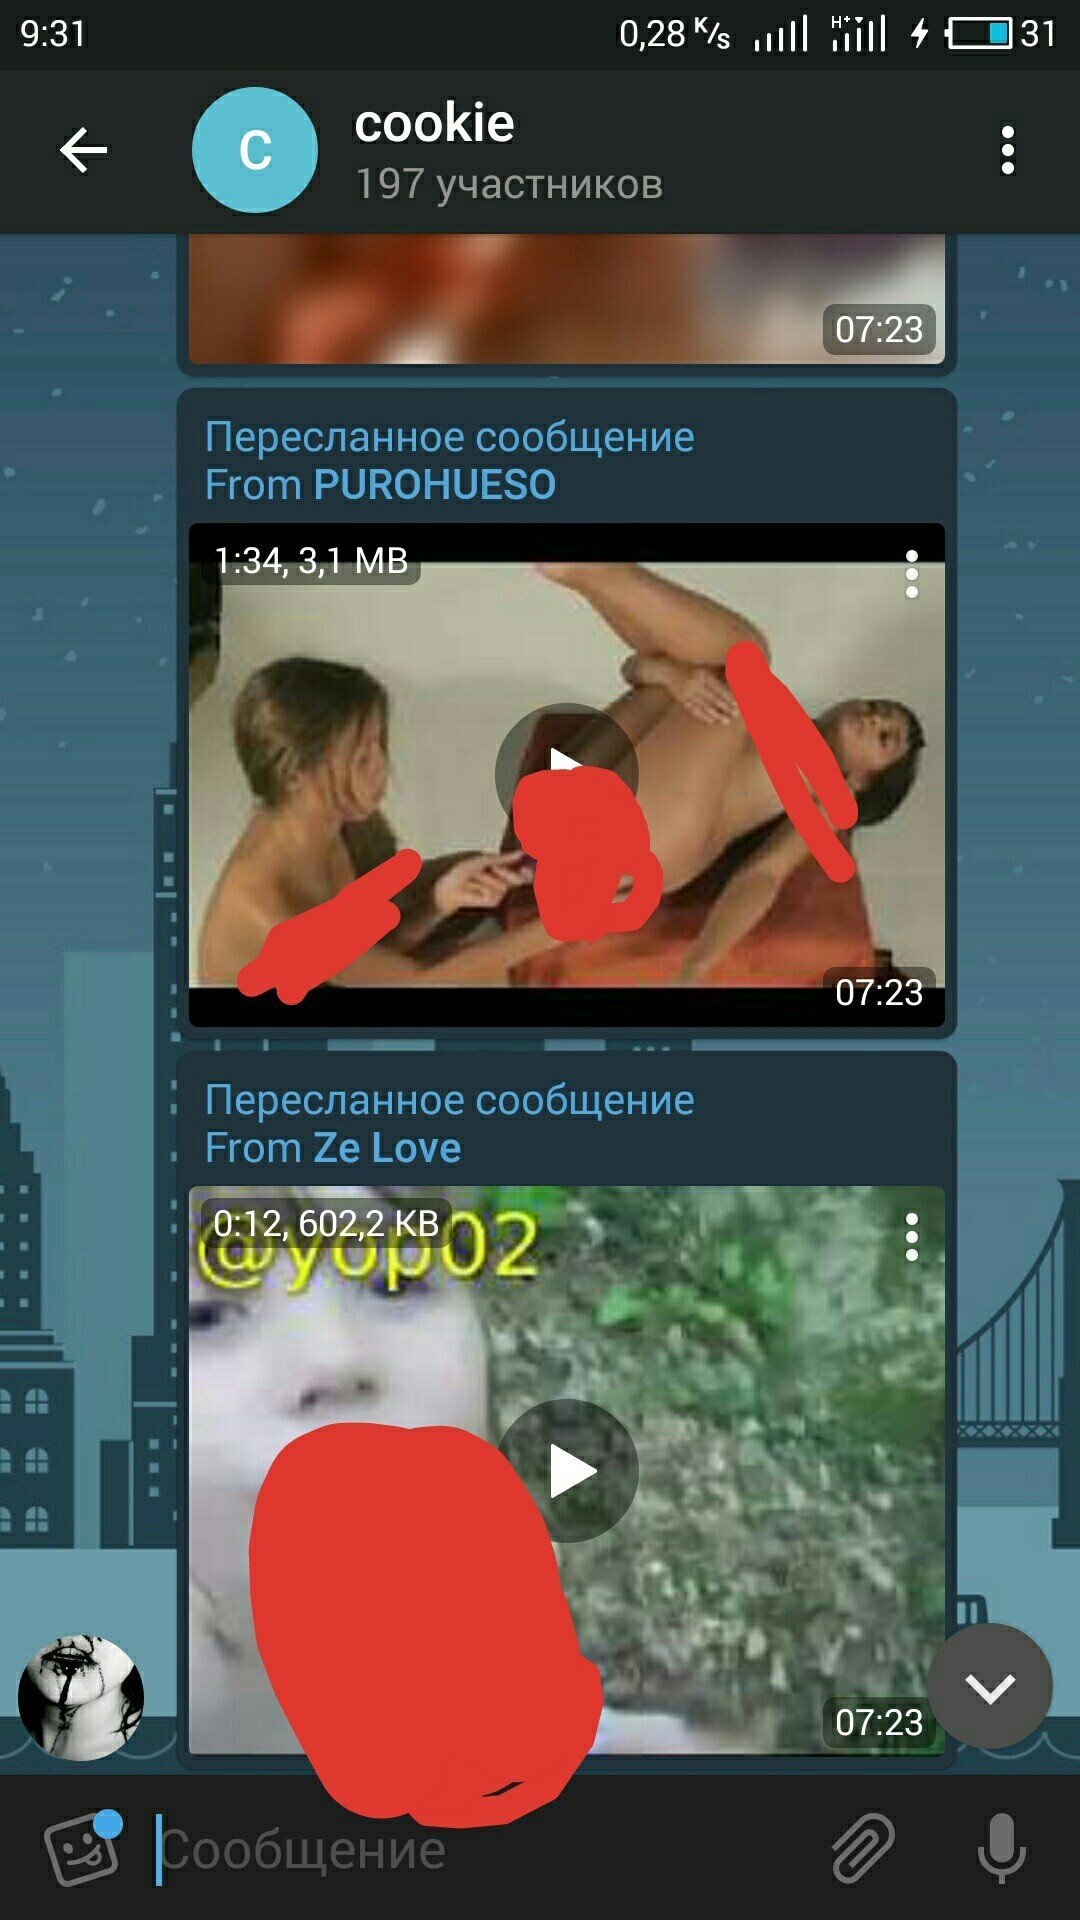 Telegram porn group join